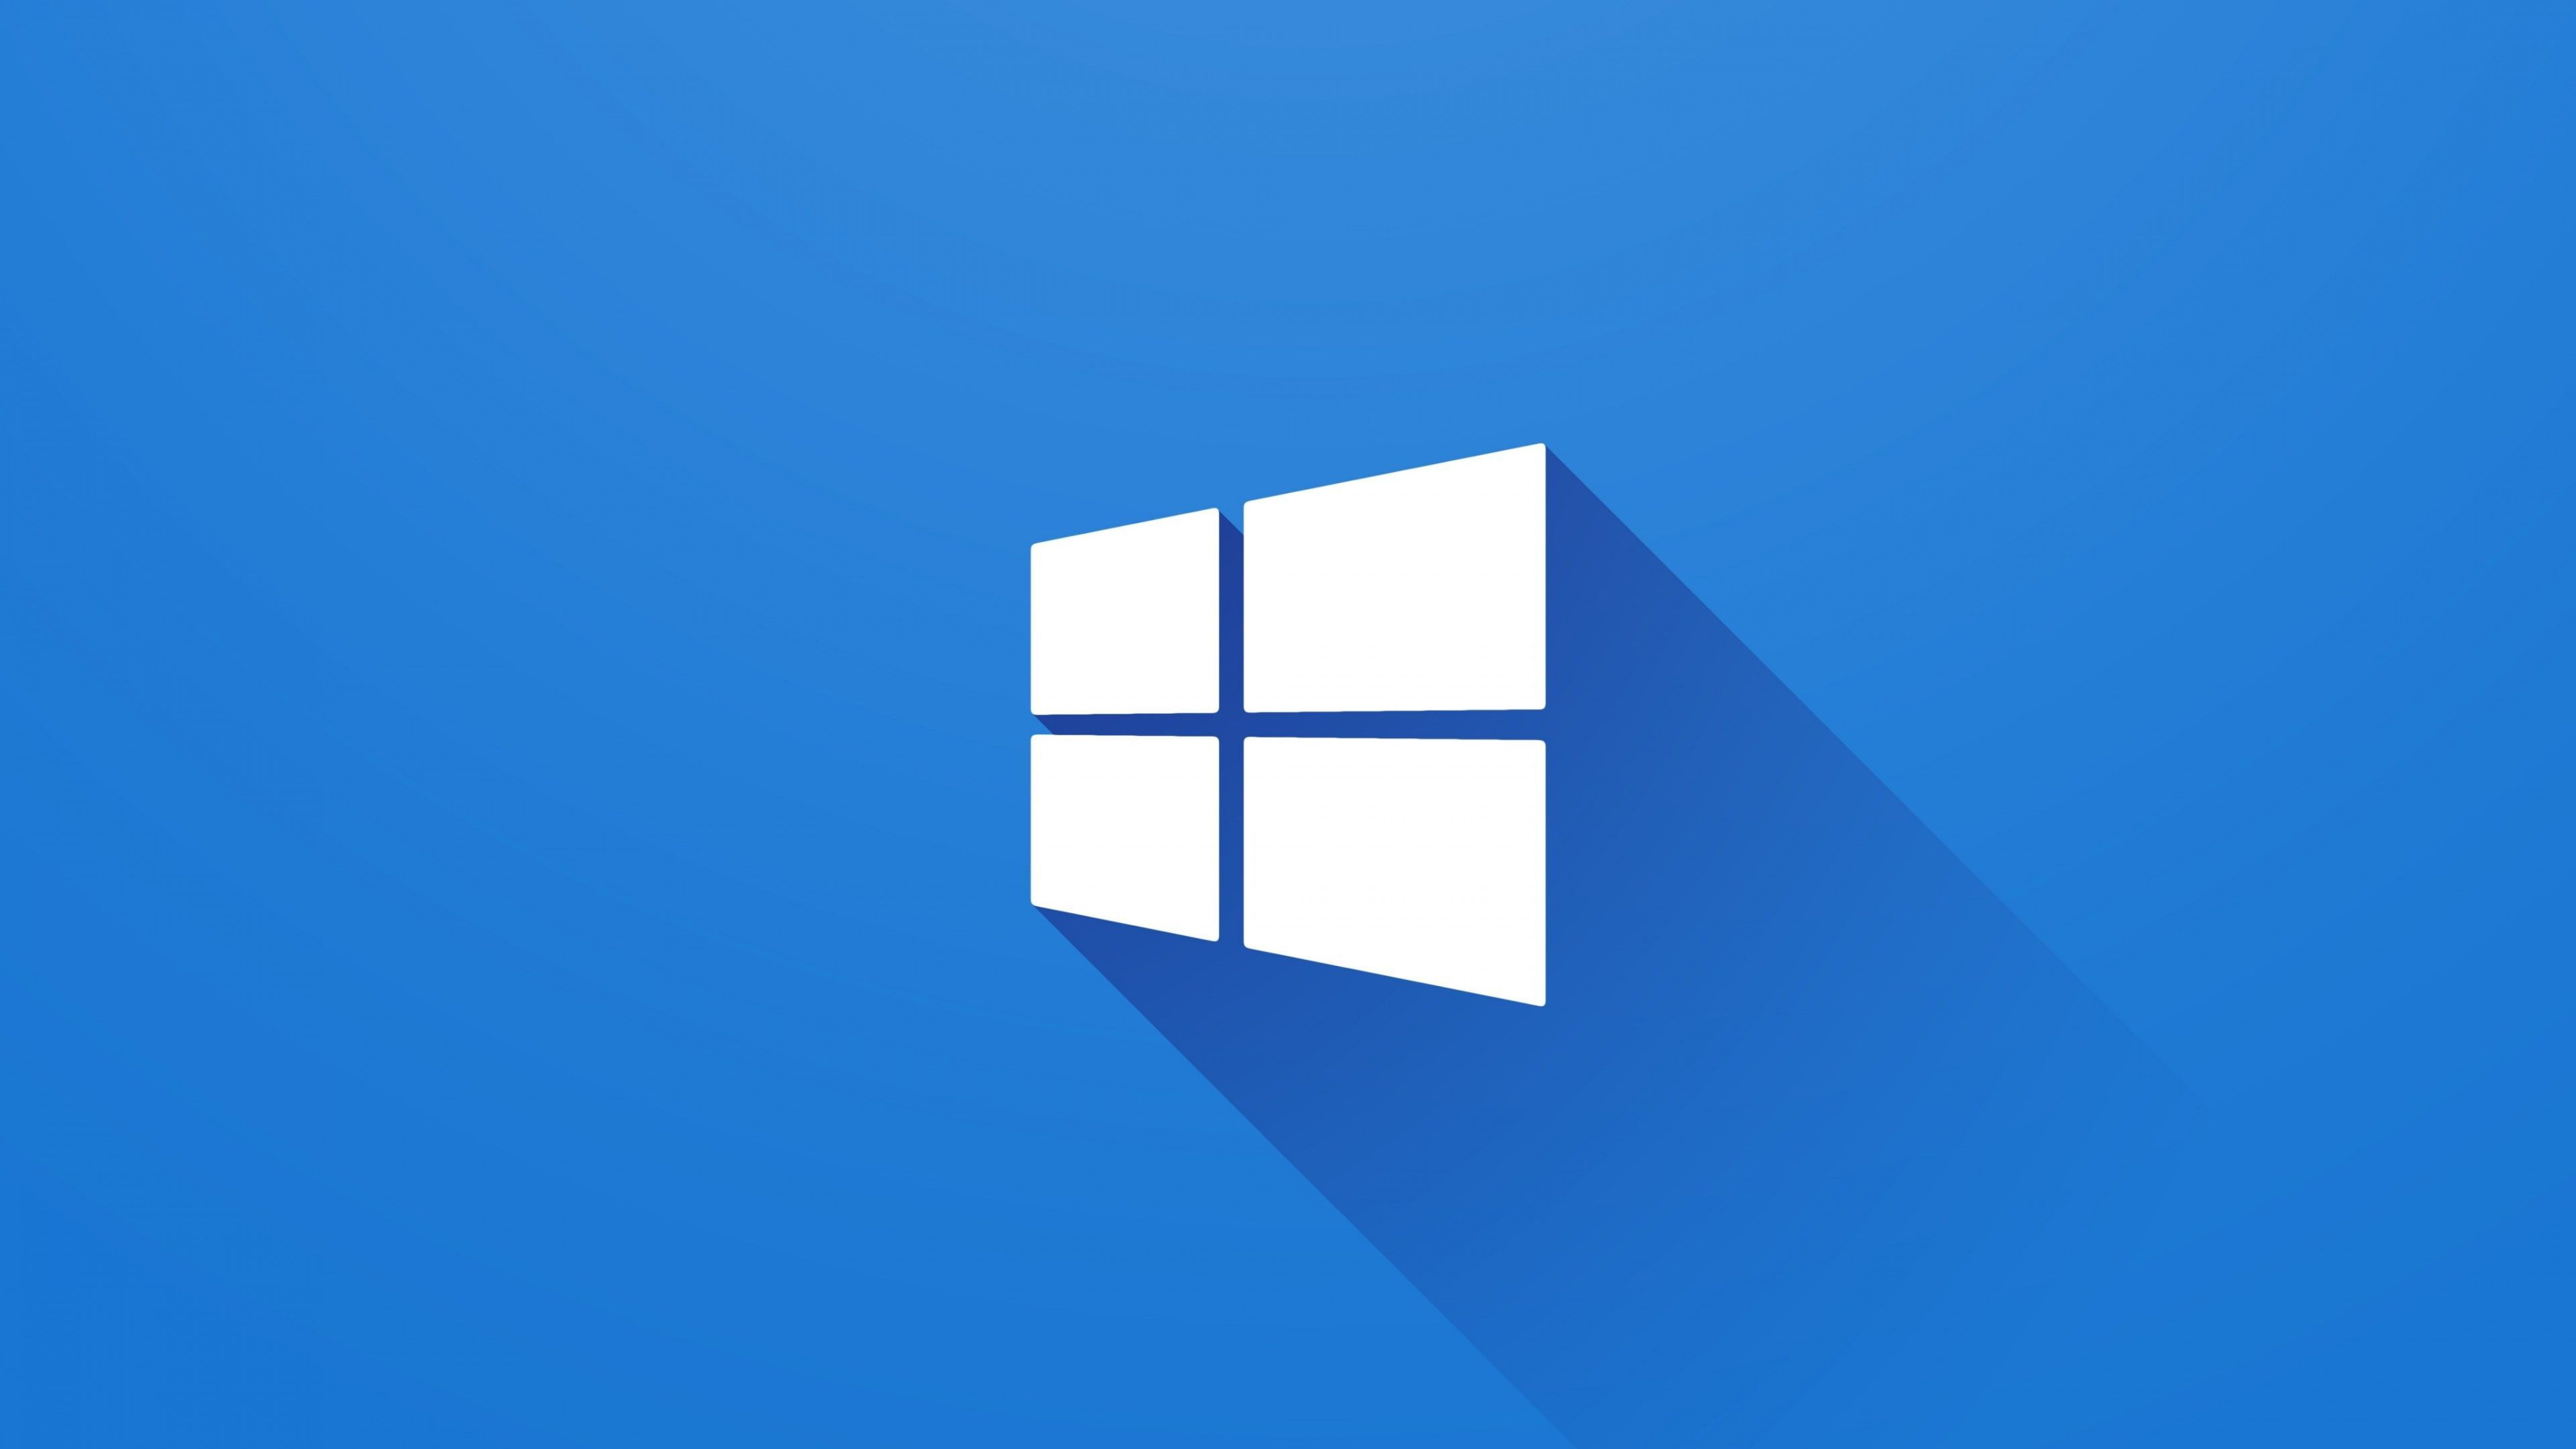 Logo Windows là biểu tượng quen thuộc với các người dùng máy tính. Hãy xem hình ảnh liên quan để tìm hiểu thêm về lịch sử và ý nghĩa của logo này.